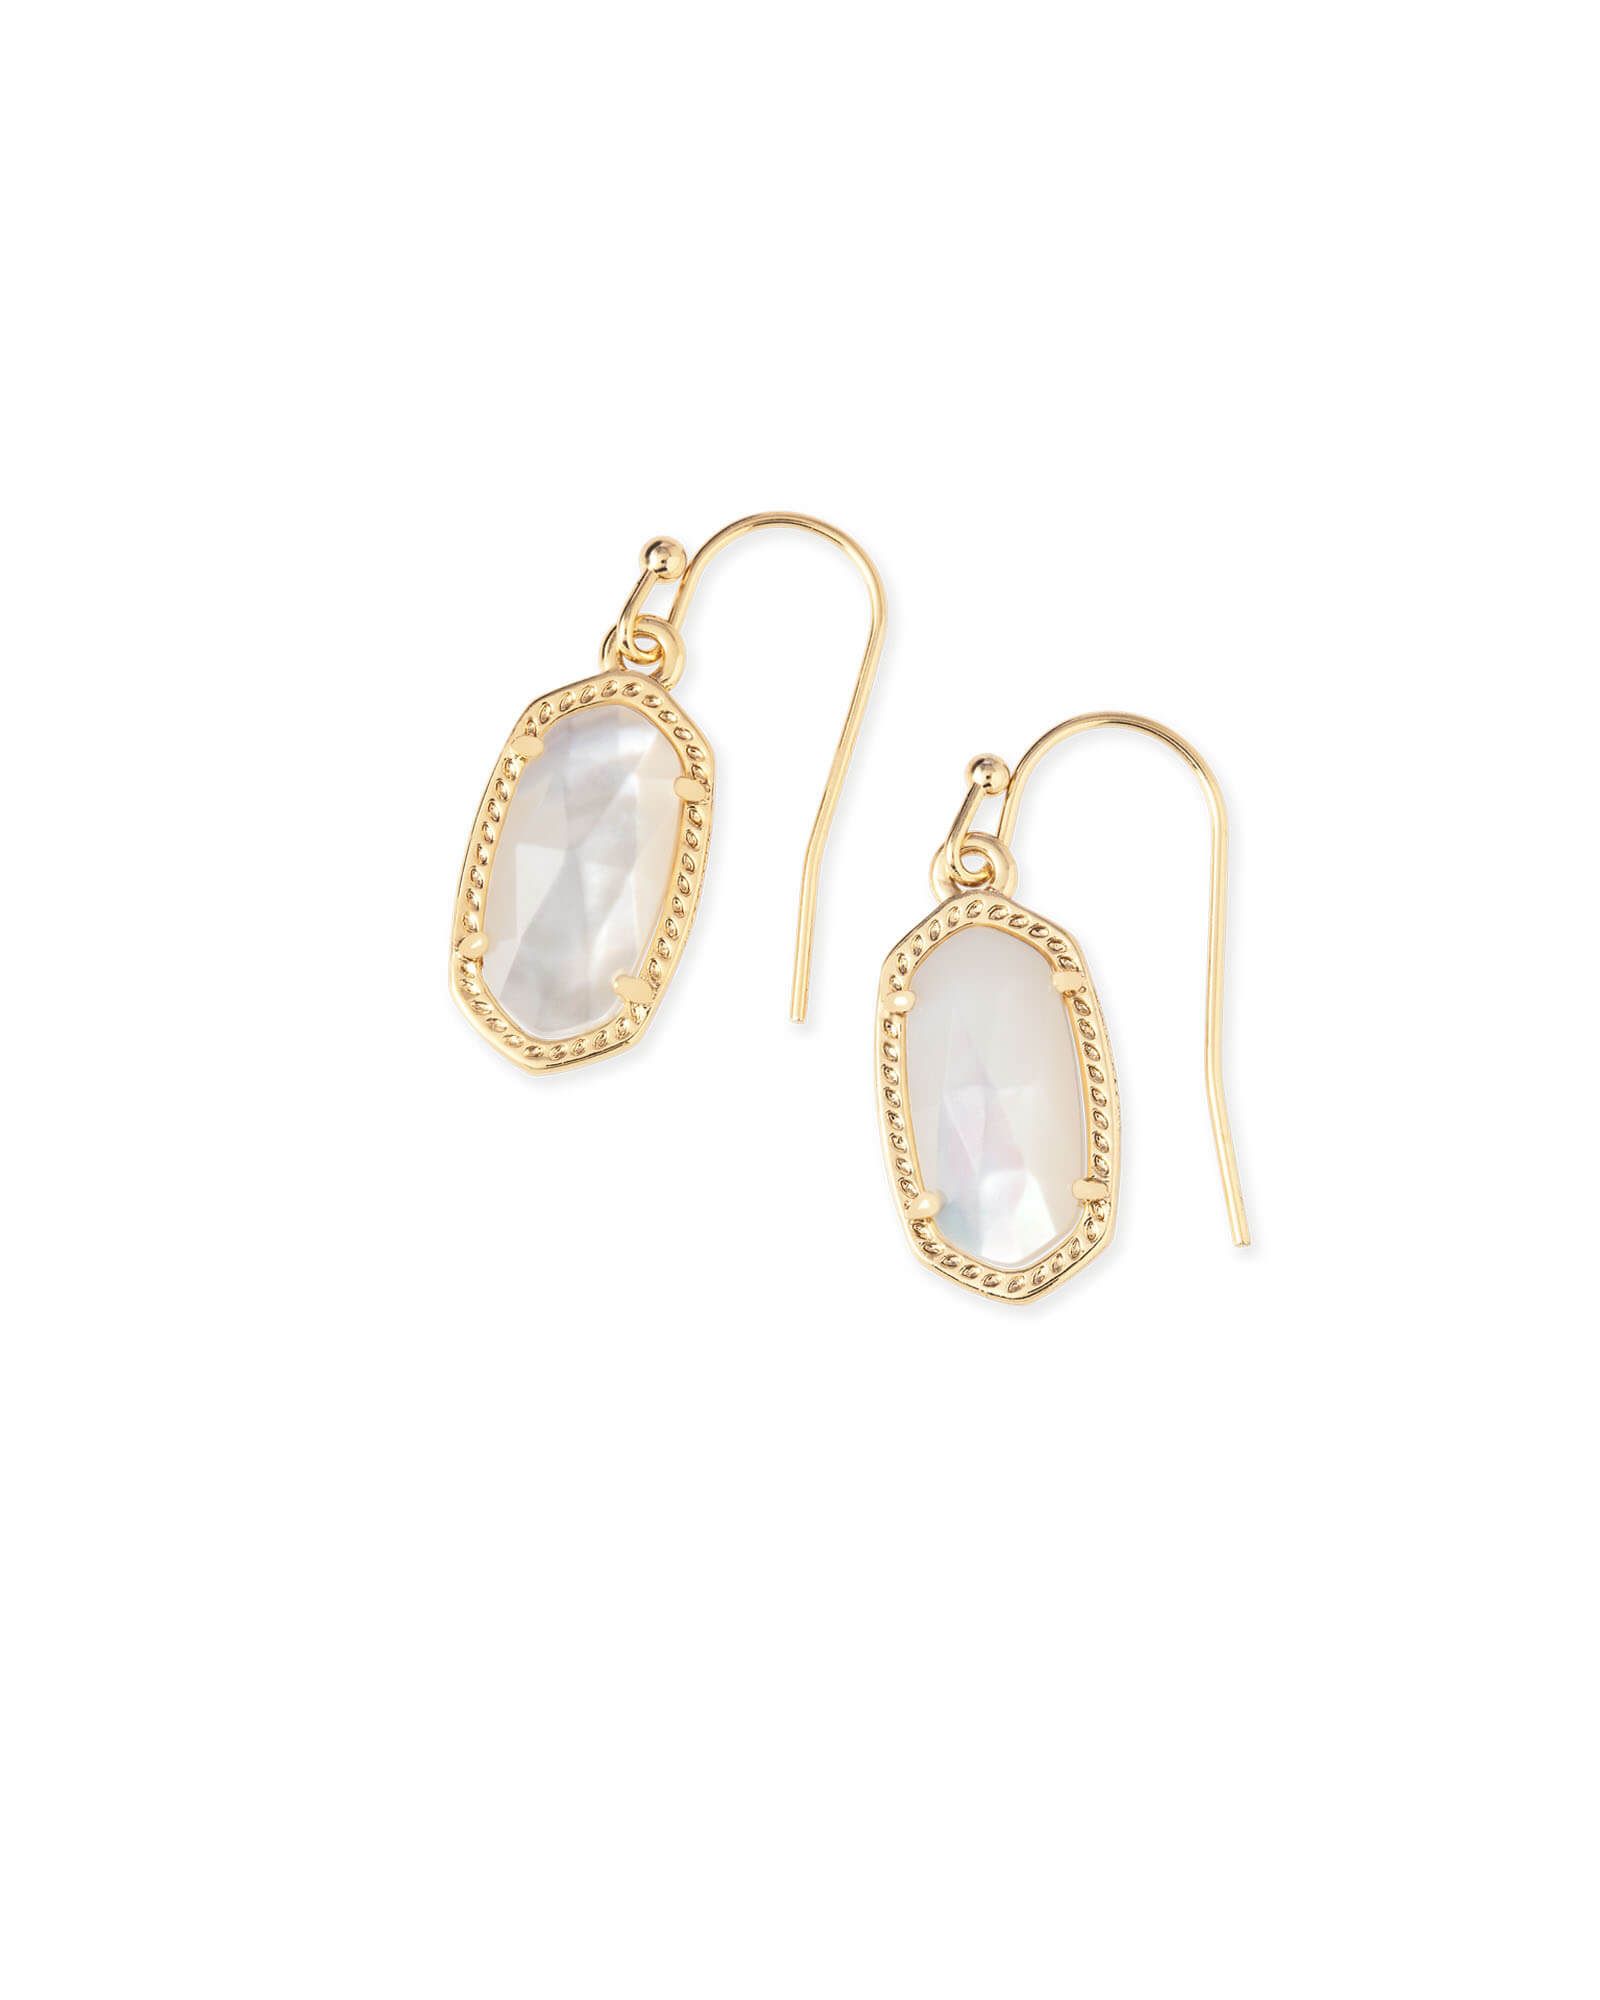 Lee Gold Drop Earrings in Ivory Pearl | Kendra Scott | Kendra Scott